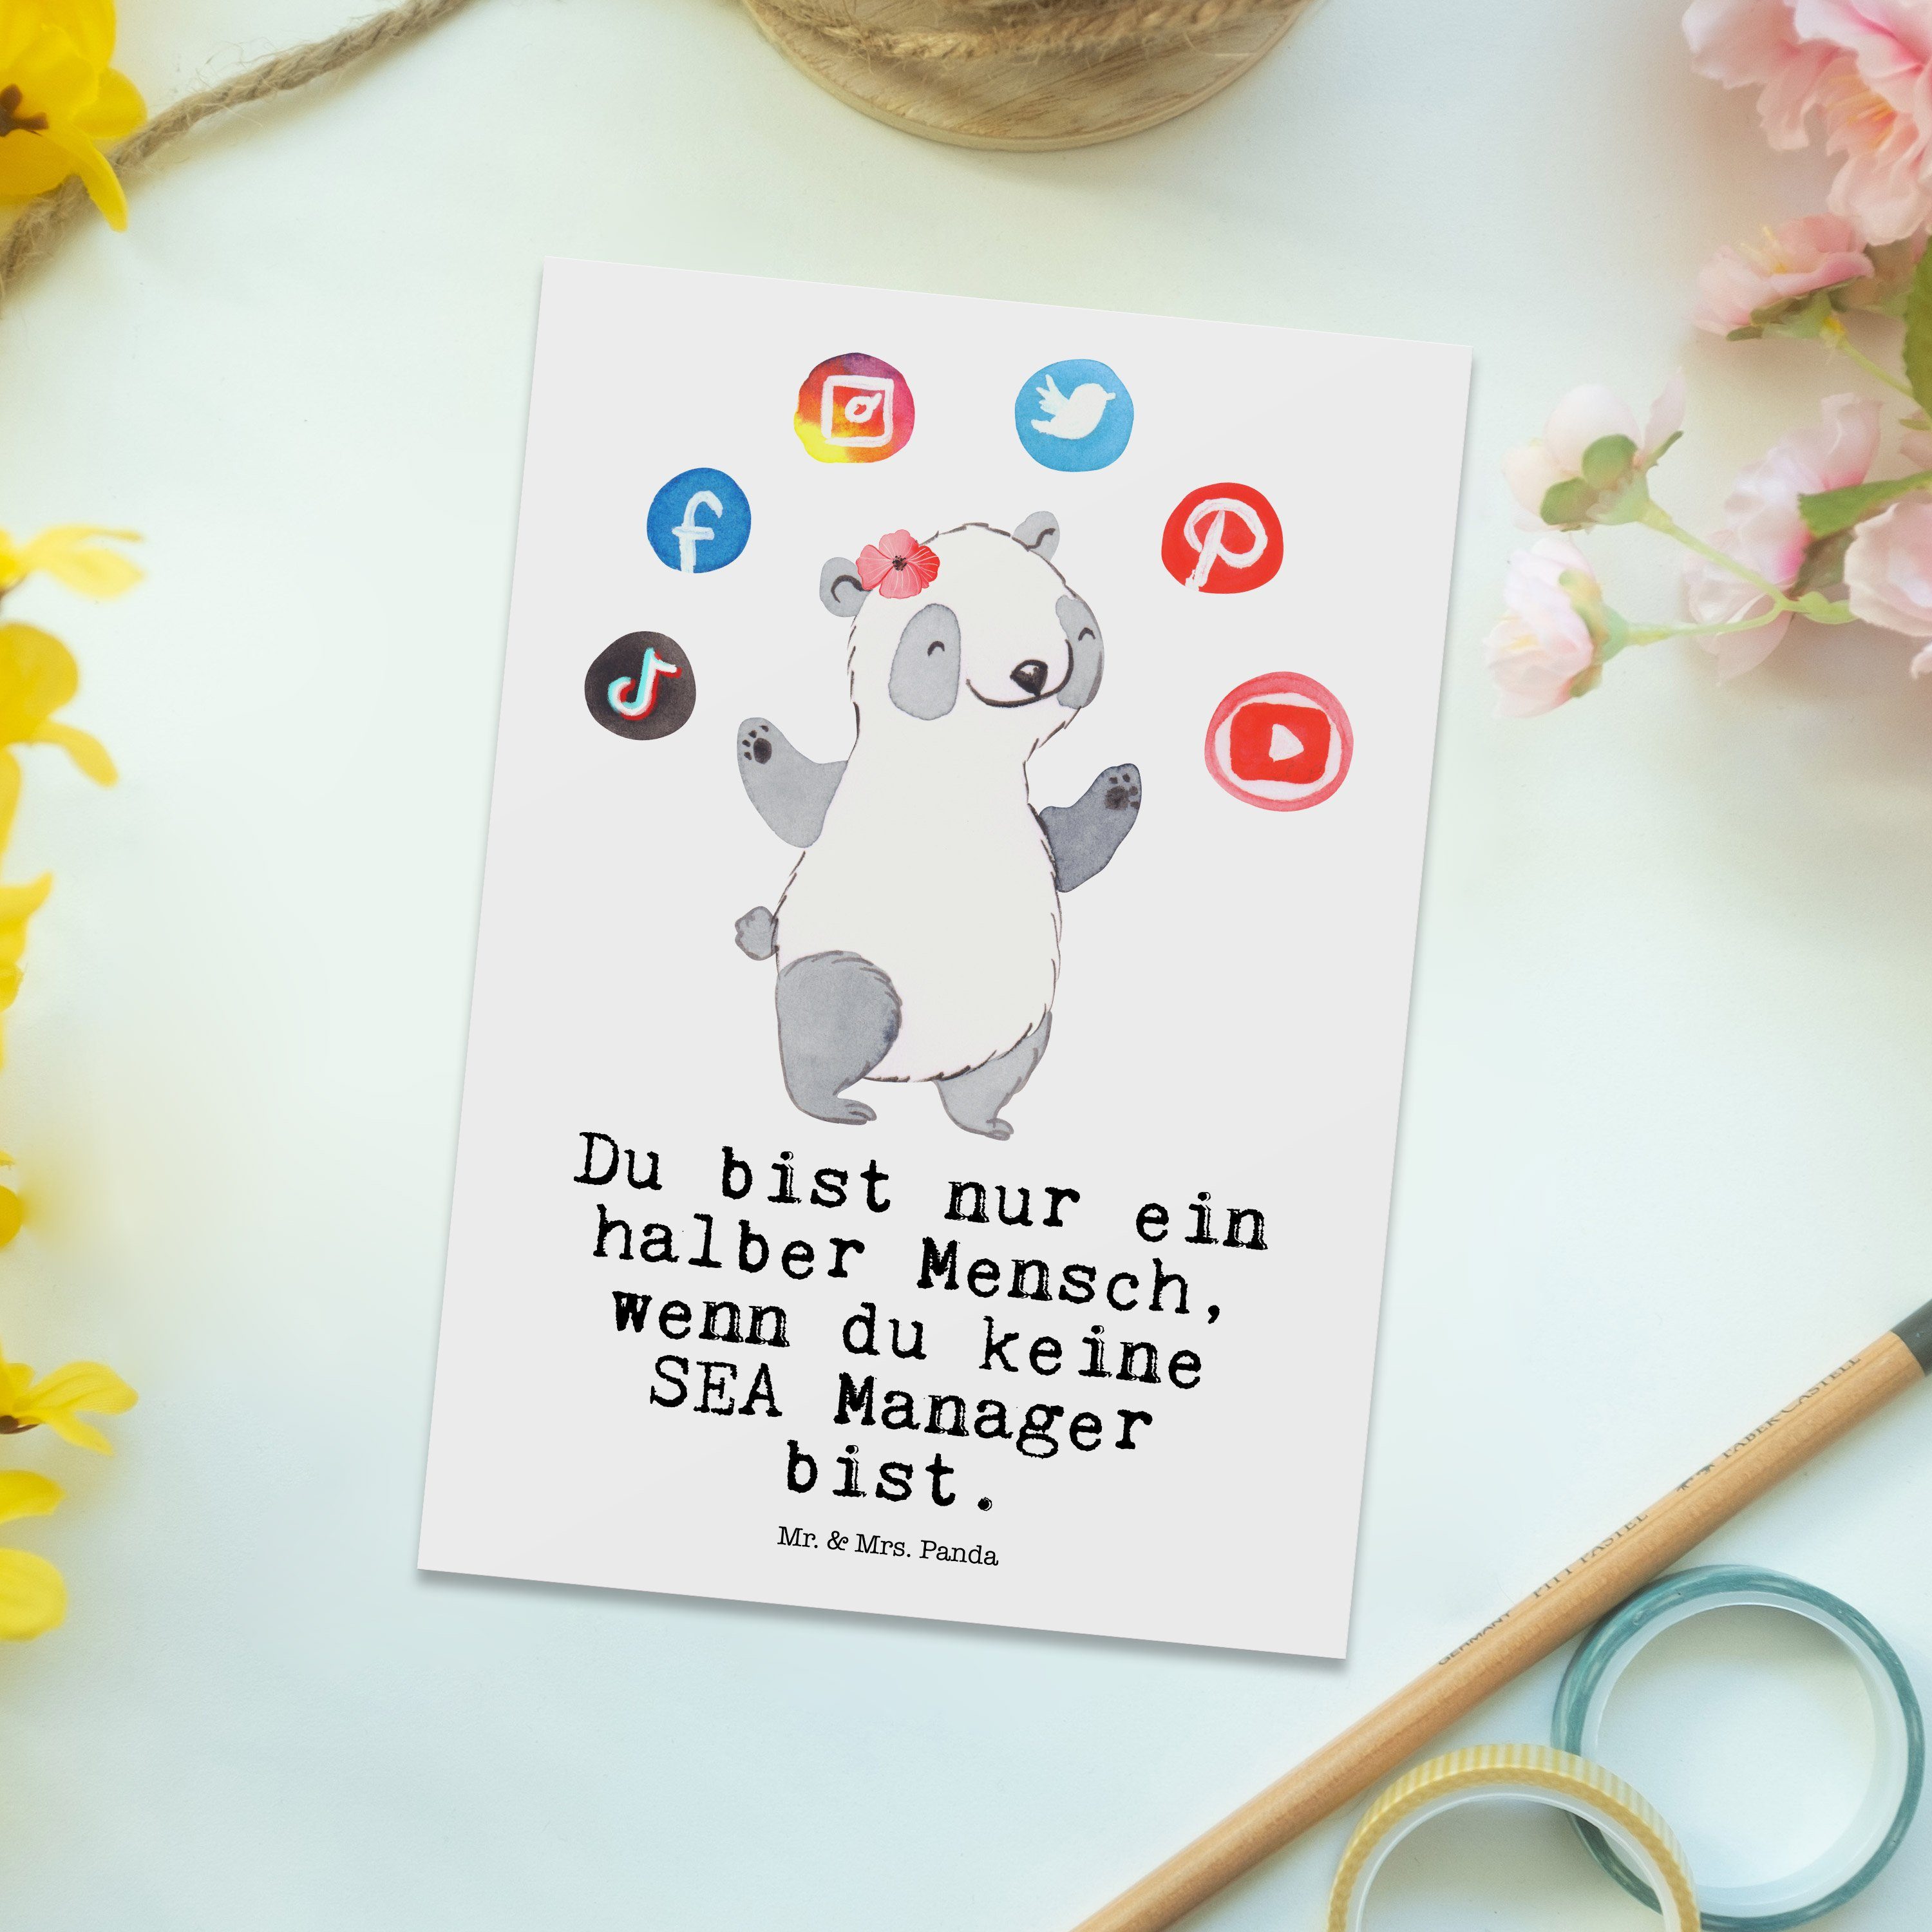 mit Mr. - Manager Gesch Suchmaschinenmarketing, Geschenk, SEA Postkarte Mrs. - Herz Panda & Weiß